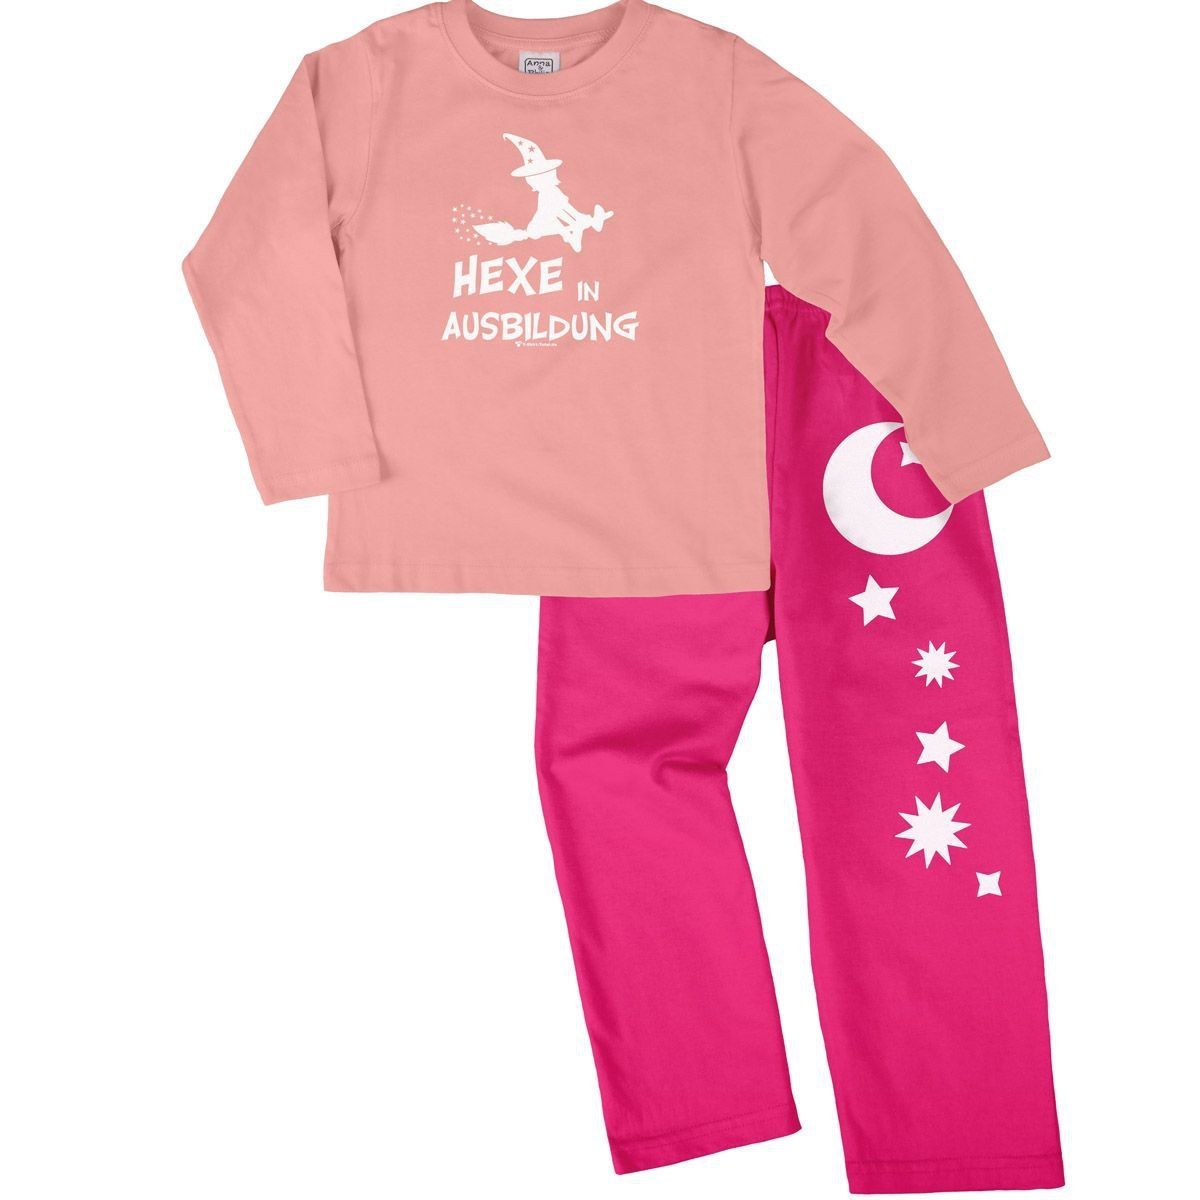 Hexe in Ausbildung Pyjama Set rosa / pink 110 / 116